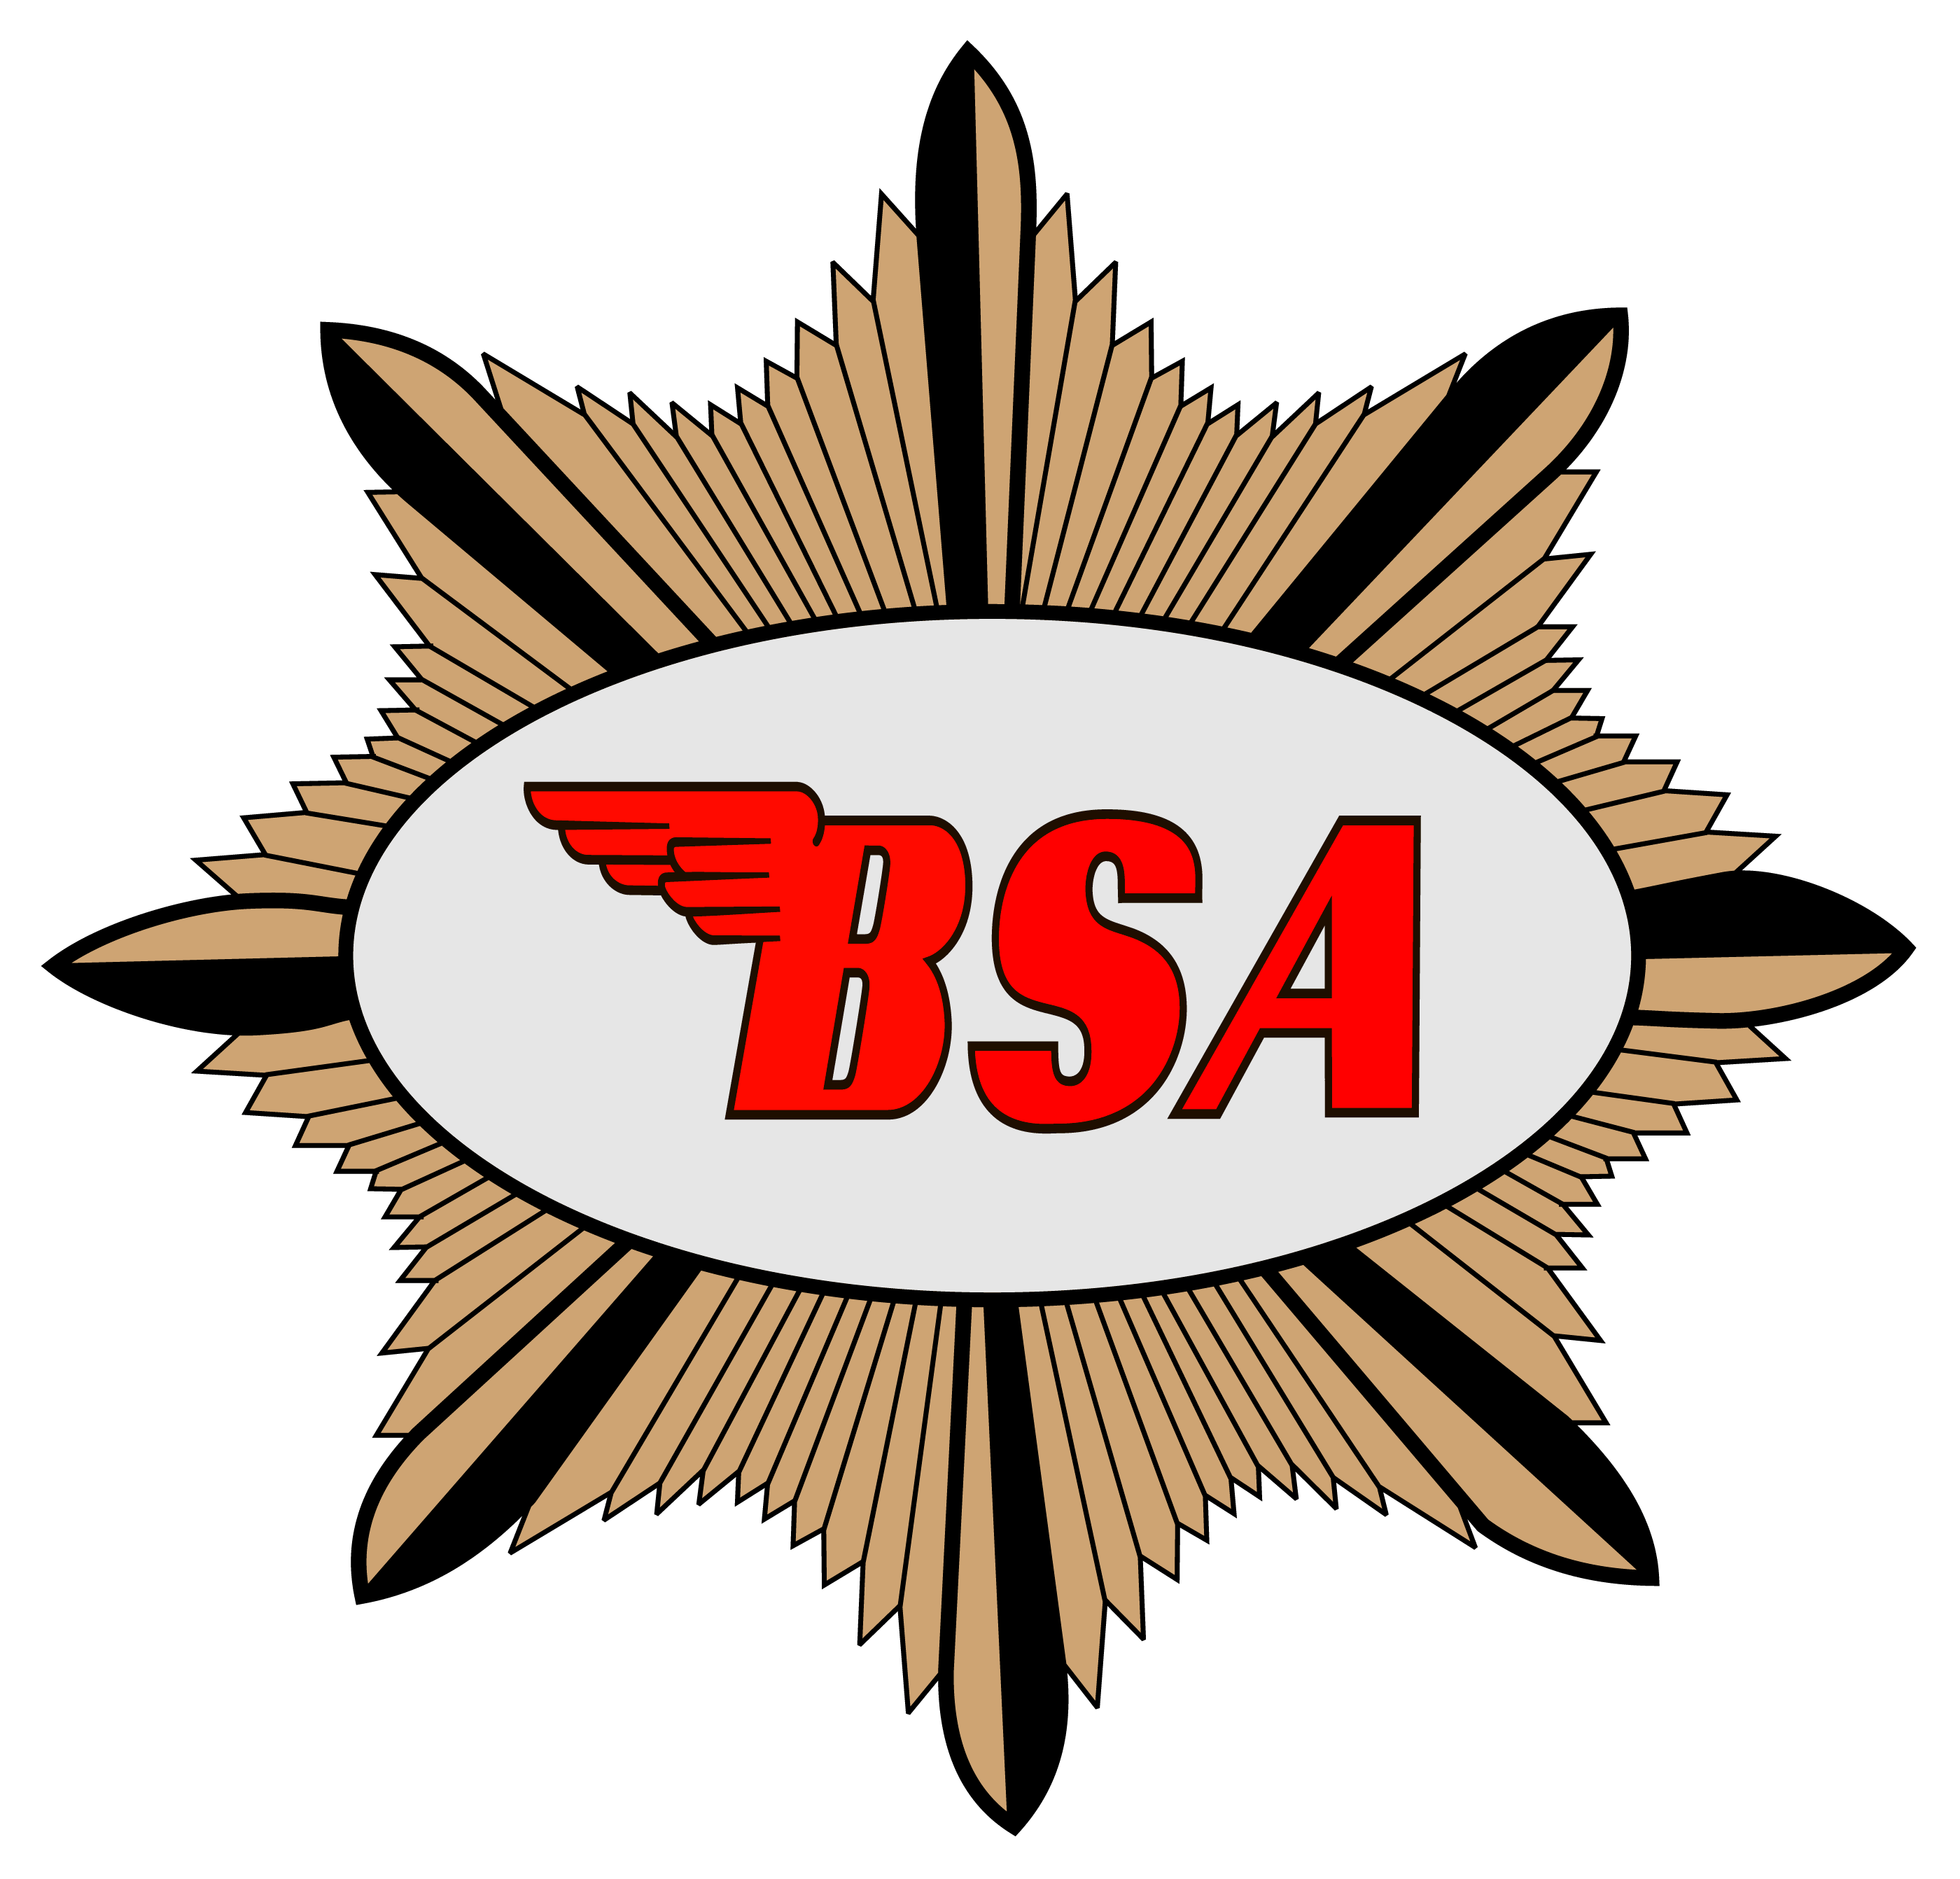 BSA Motorcycle Logo - BSA Motorcycle Logo | Logos | Pinterest | Motorcycle logo ...